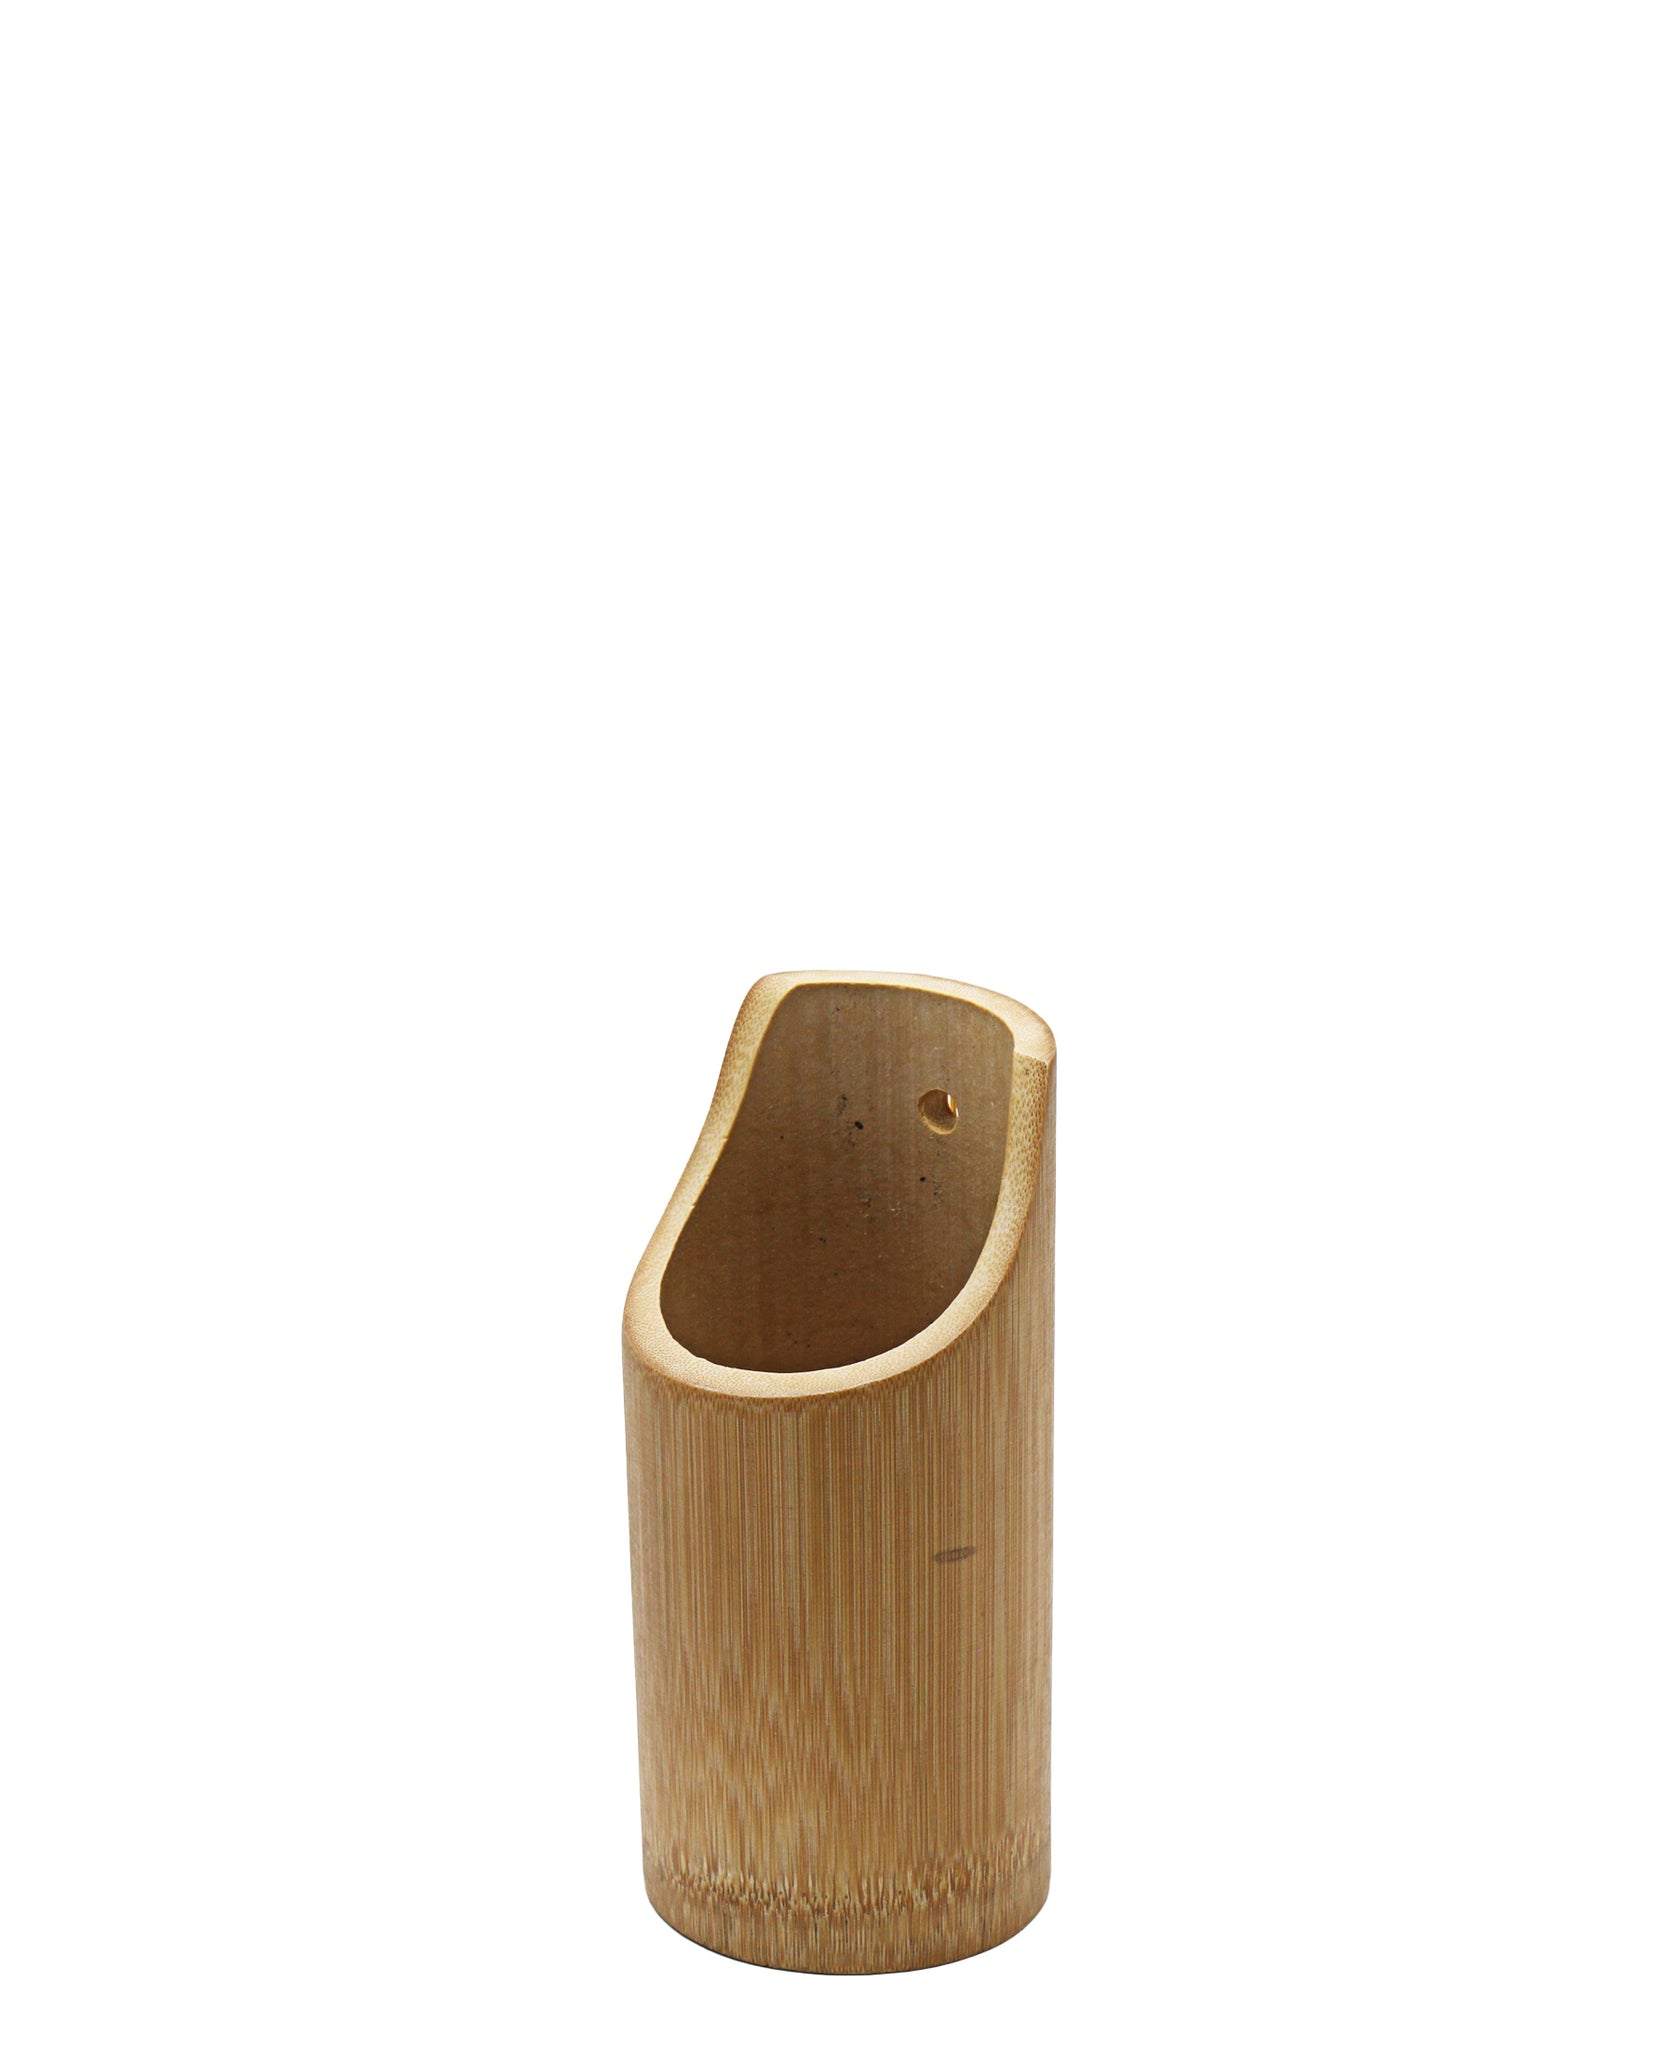 Bamboo Utensils Holder 5 Piece - Oak